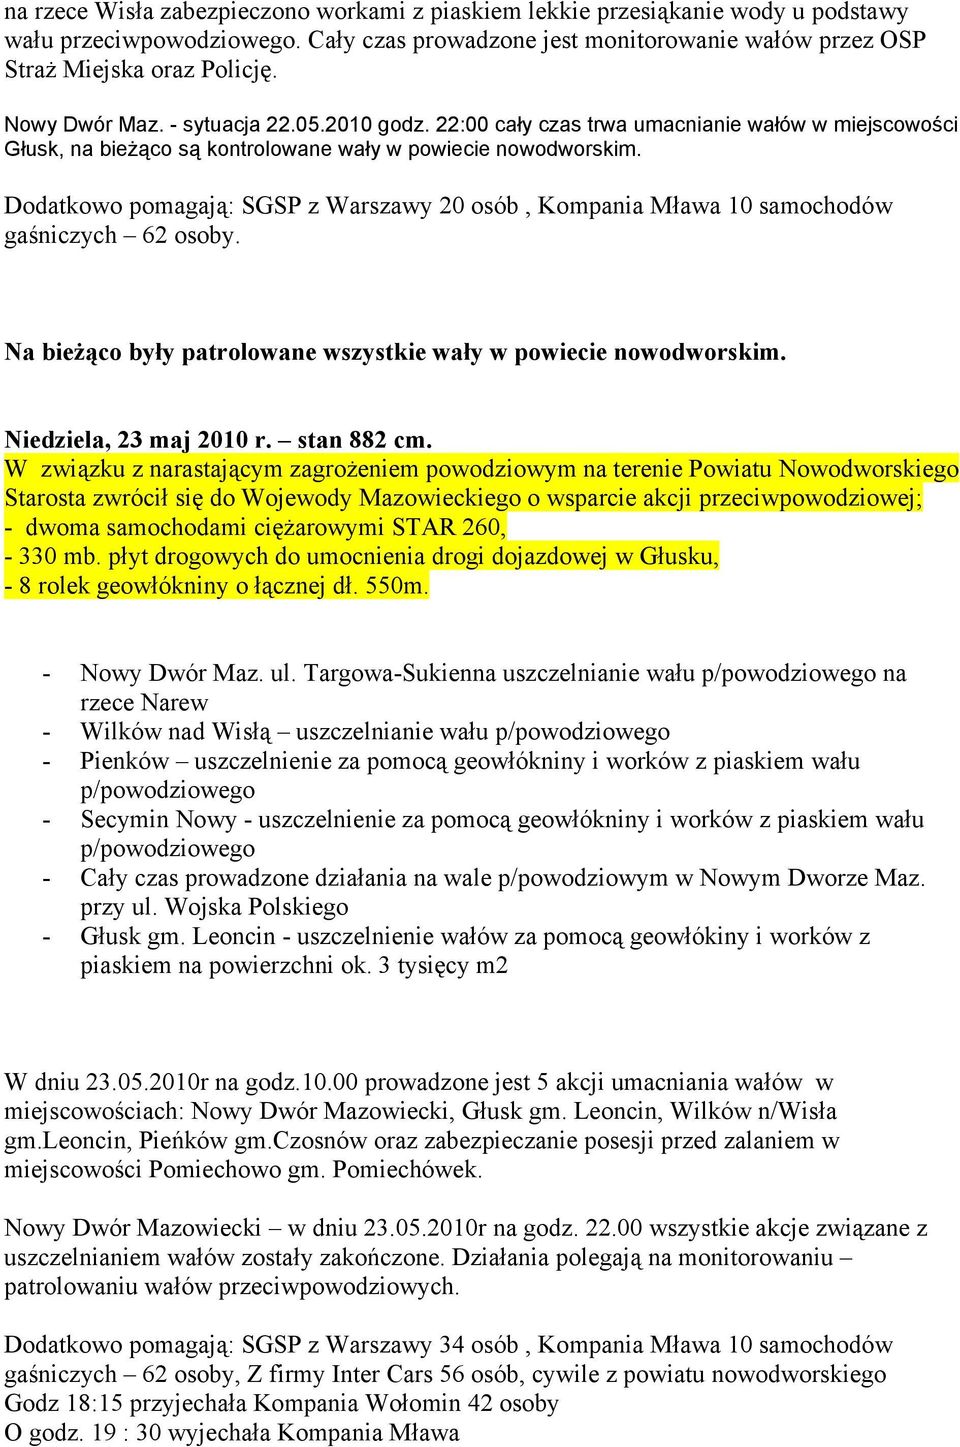 Dodatkowo pomagają: SGSP z Warszawy 20 osób, Kompania Mława 10 samochodów gaśniczych 62 osoby. Na bieżąco były patrolowane wszystkie wały w powiecie nowodworskim. Niedziela, 23 maj 2010 r.